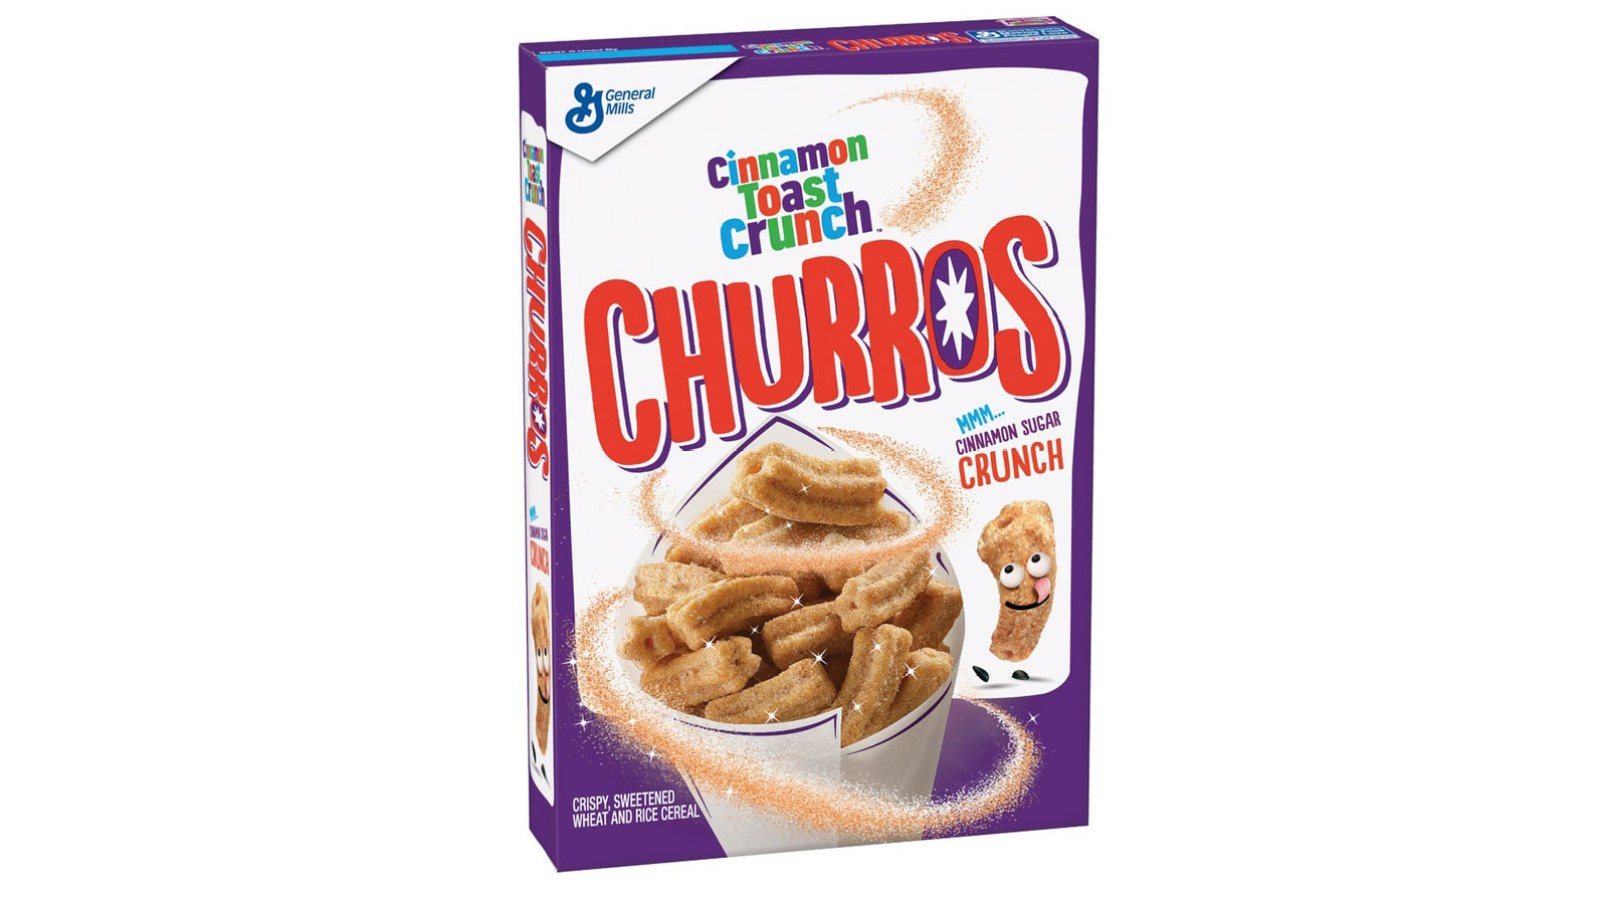 Cinnamon Toast Crunch Churro Cereal